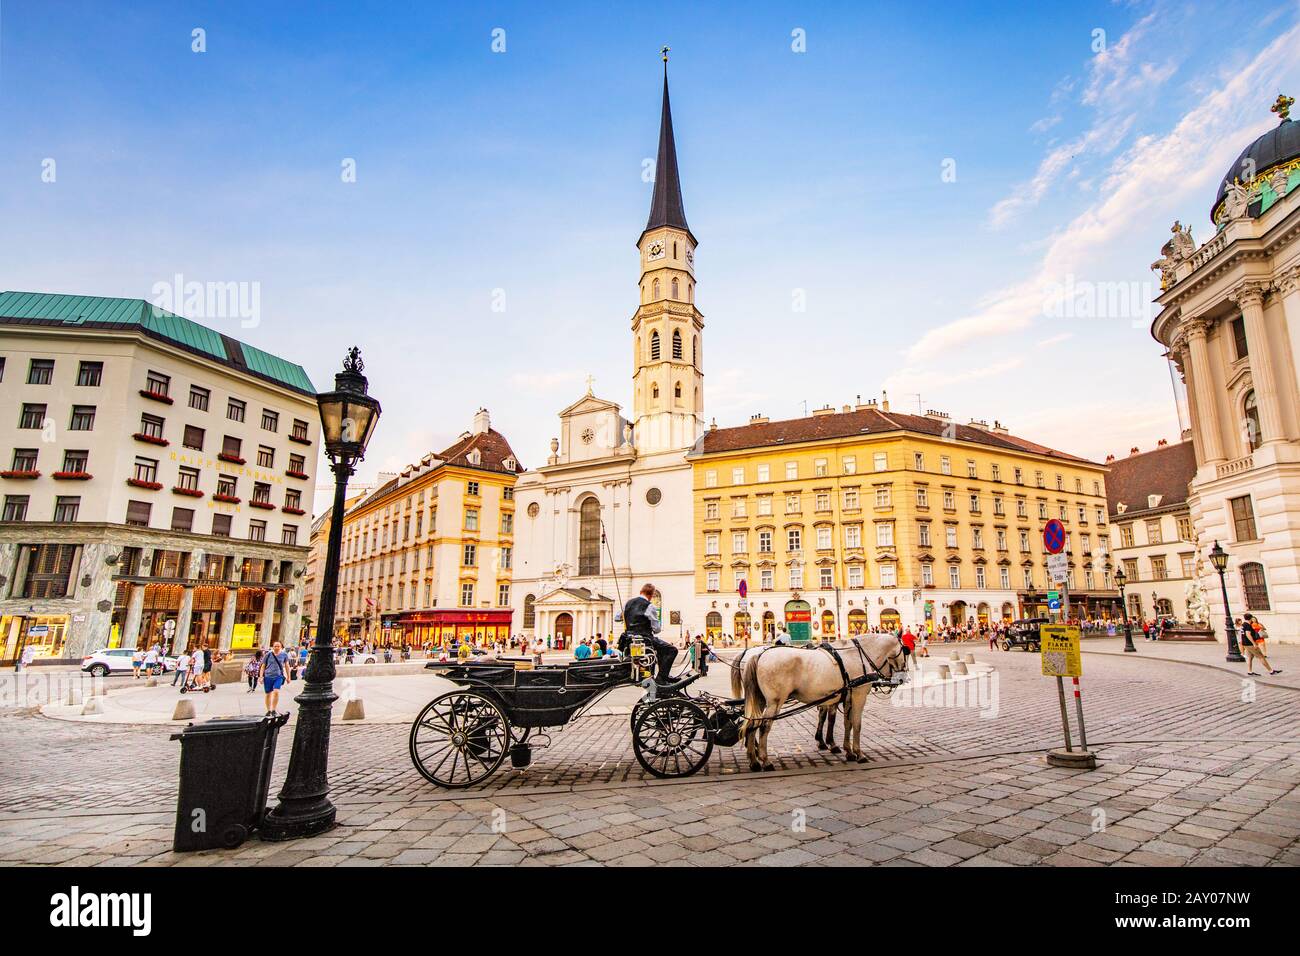 19 juillet 2019, Vienne, Autriche : vue panoramique sur l'église Saint-Michel sur la place Michaelerplatz avec entraîneur à cheval et touristes Banque D'Images